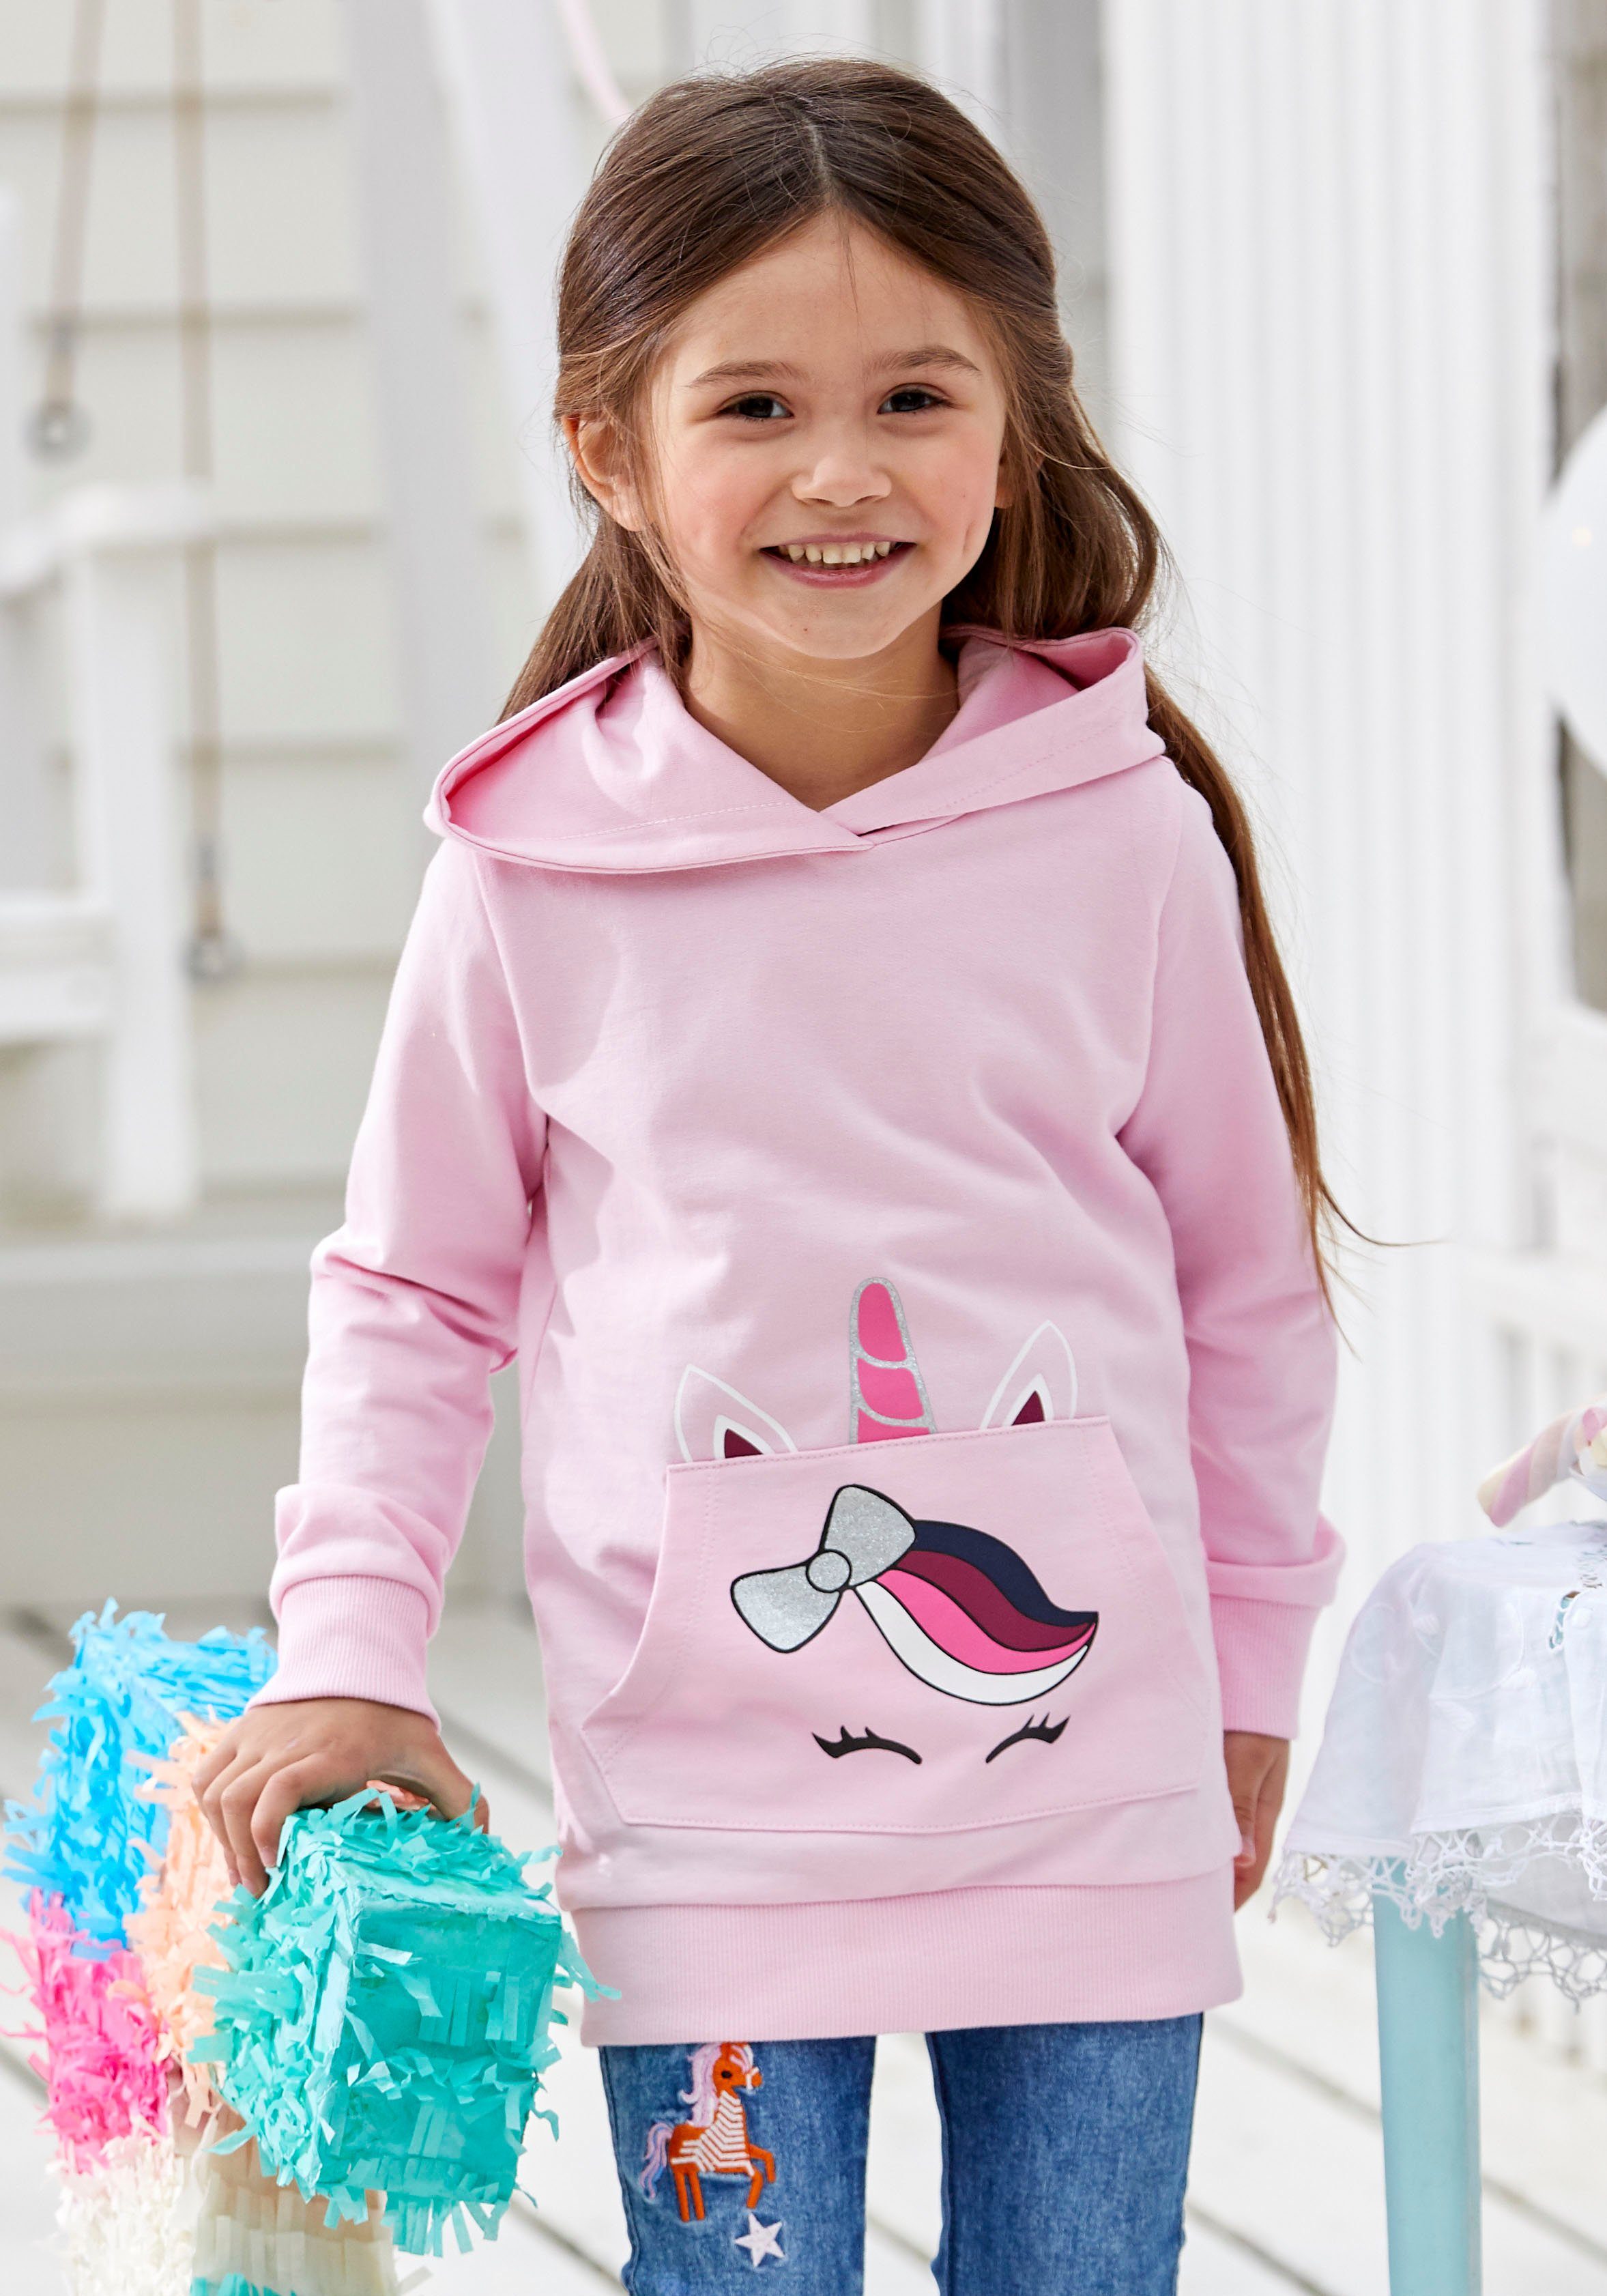 KIDSWORLD Longsweatshirt für kleine Mädchen mit niedlichem Taschendruck